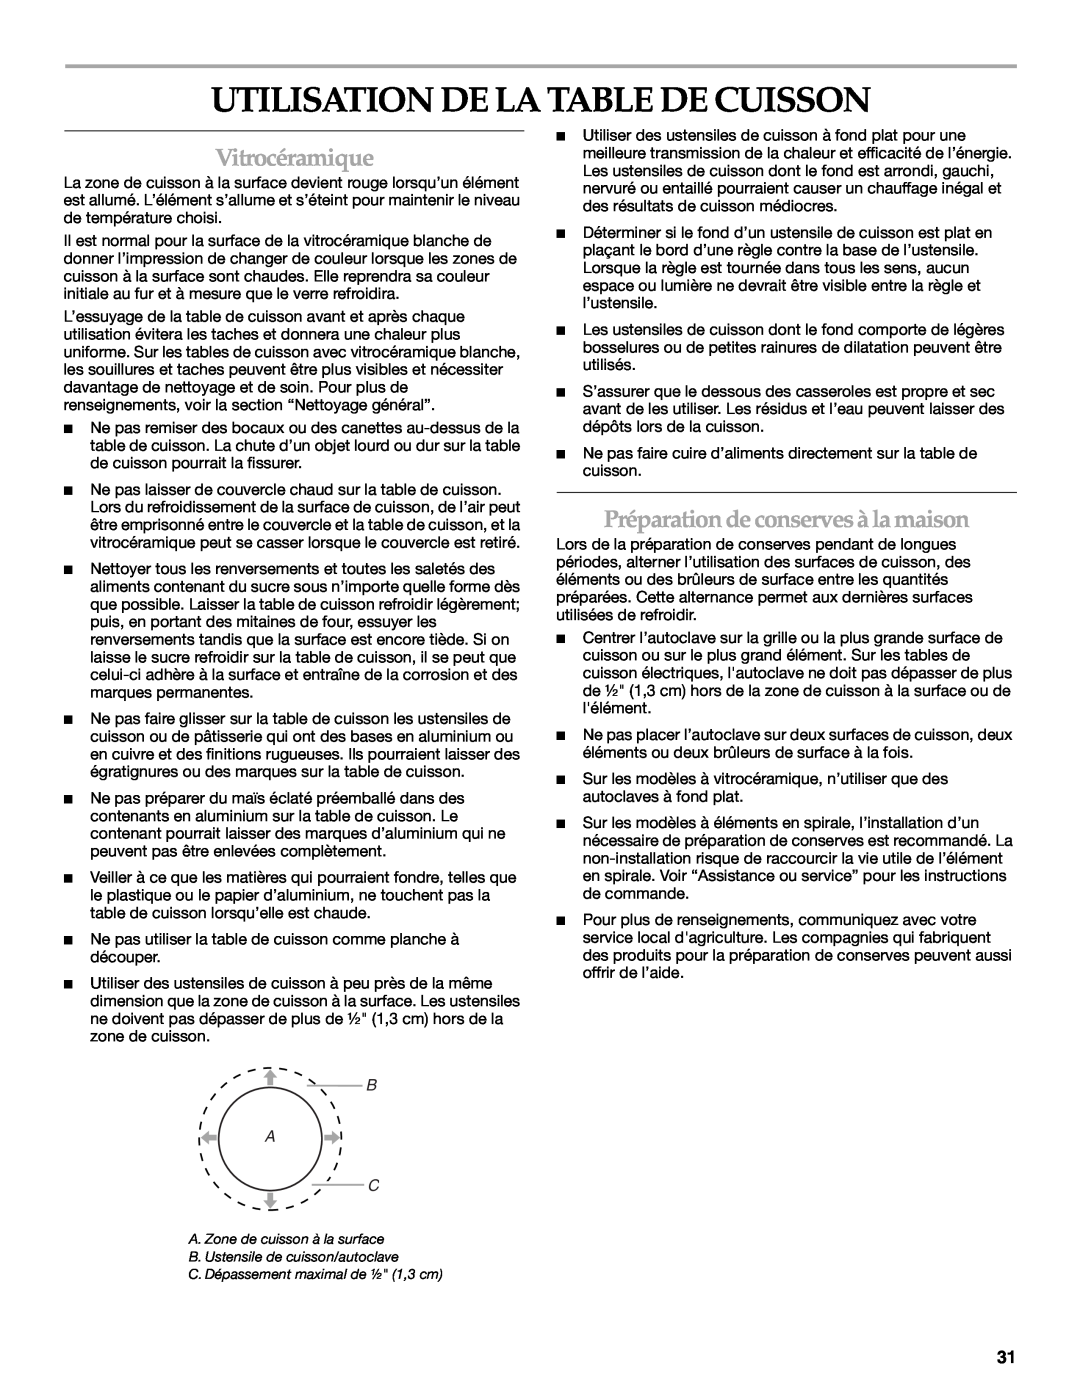 KitchenAid KECC056 manual Utilisation De La Table De Cuisson, Vitrocéramique, Préparation de conserves à la maison, B A C 